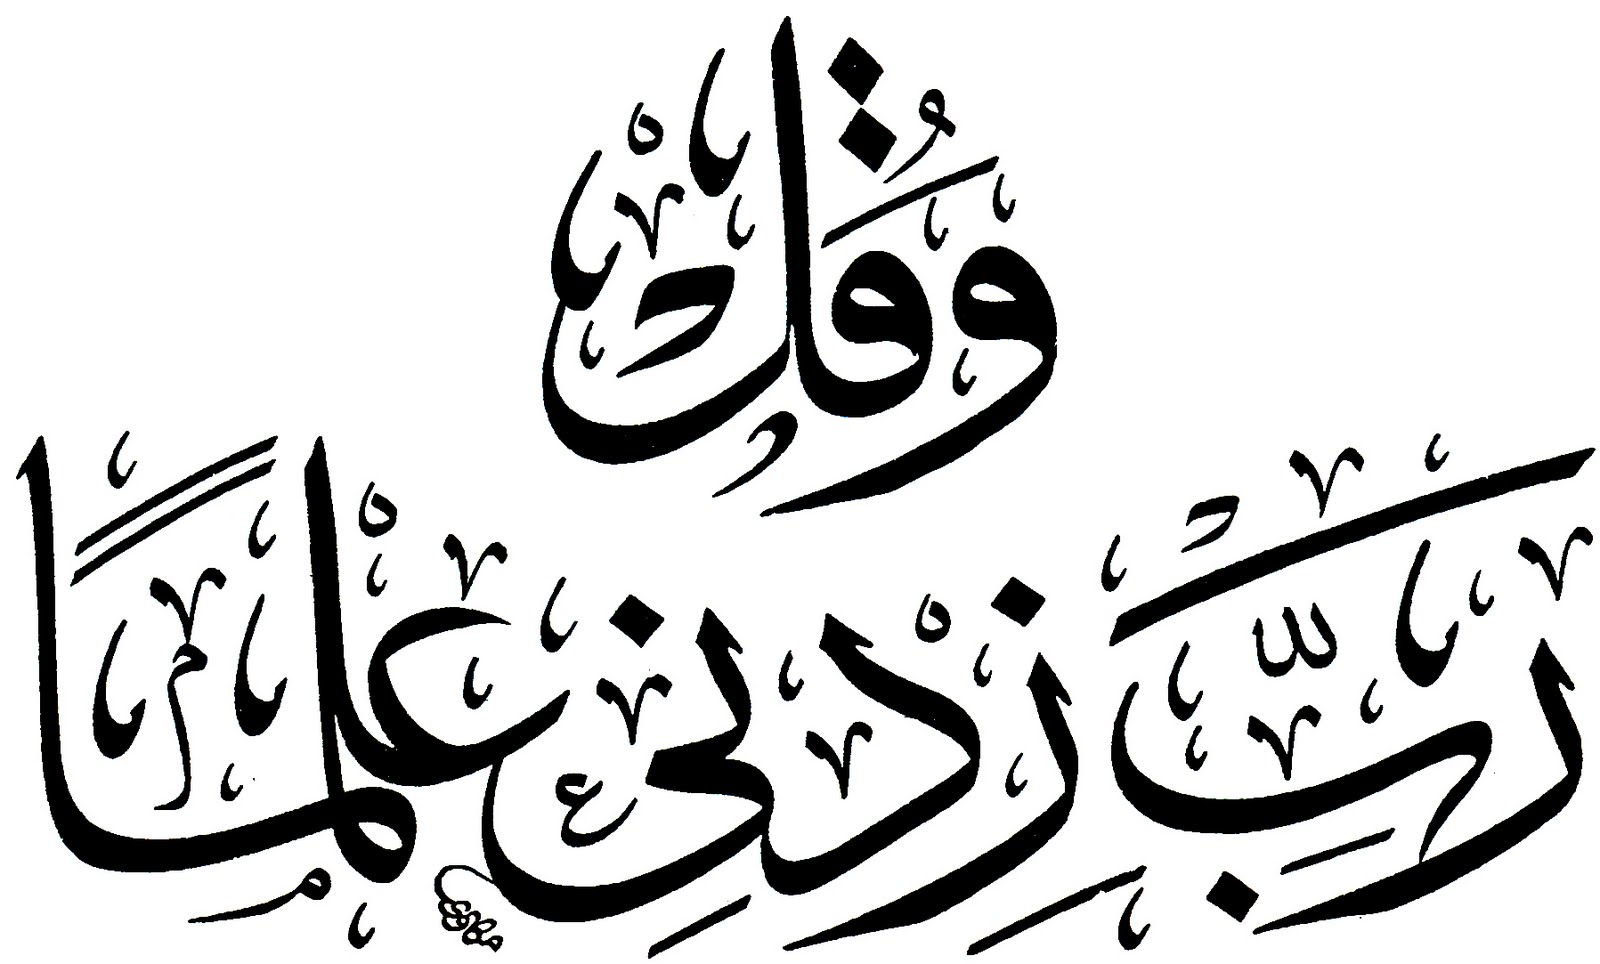 خطوط اسلامية , انواع الخط العربي صور جميلة